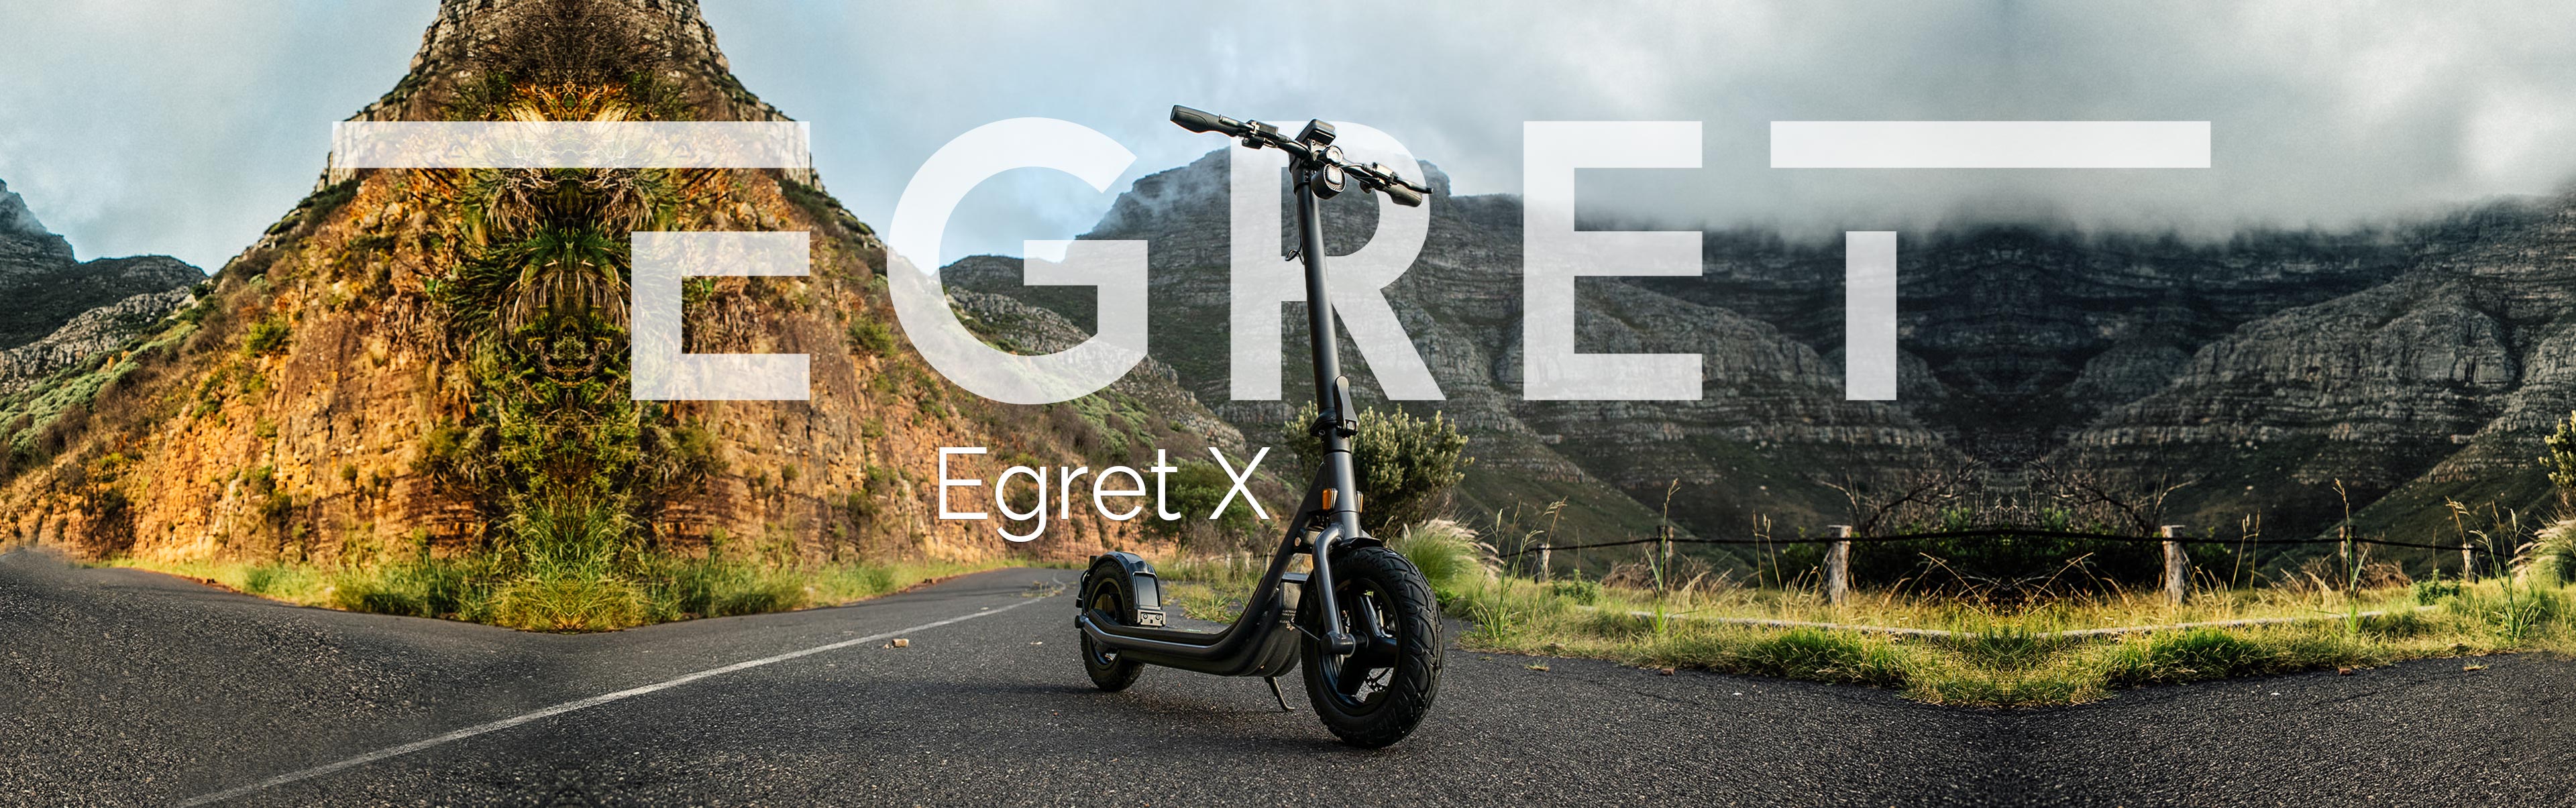 eScooter Egret X vor Bergkulisse